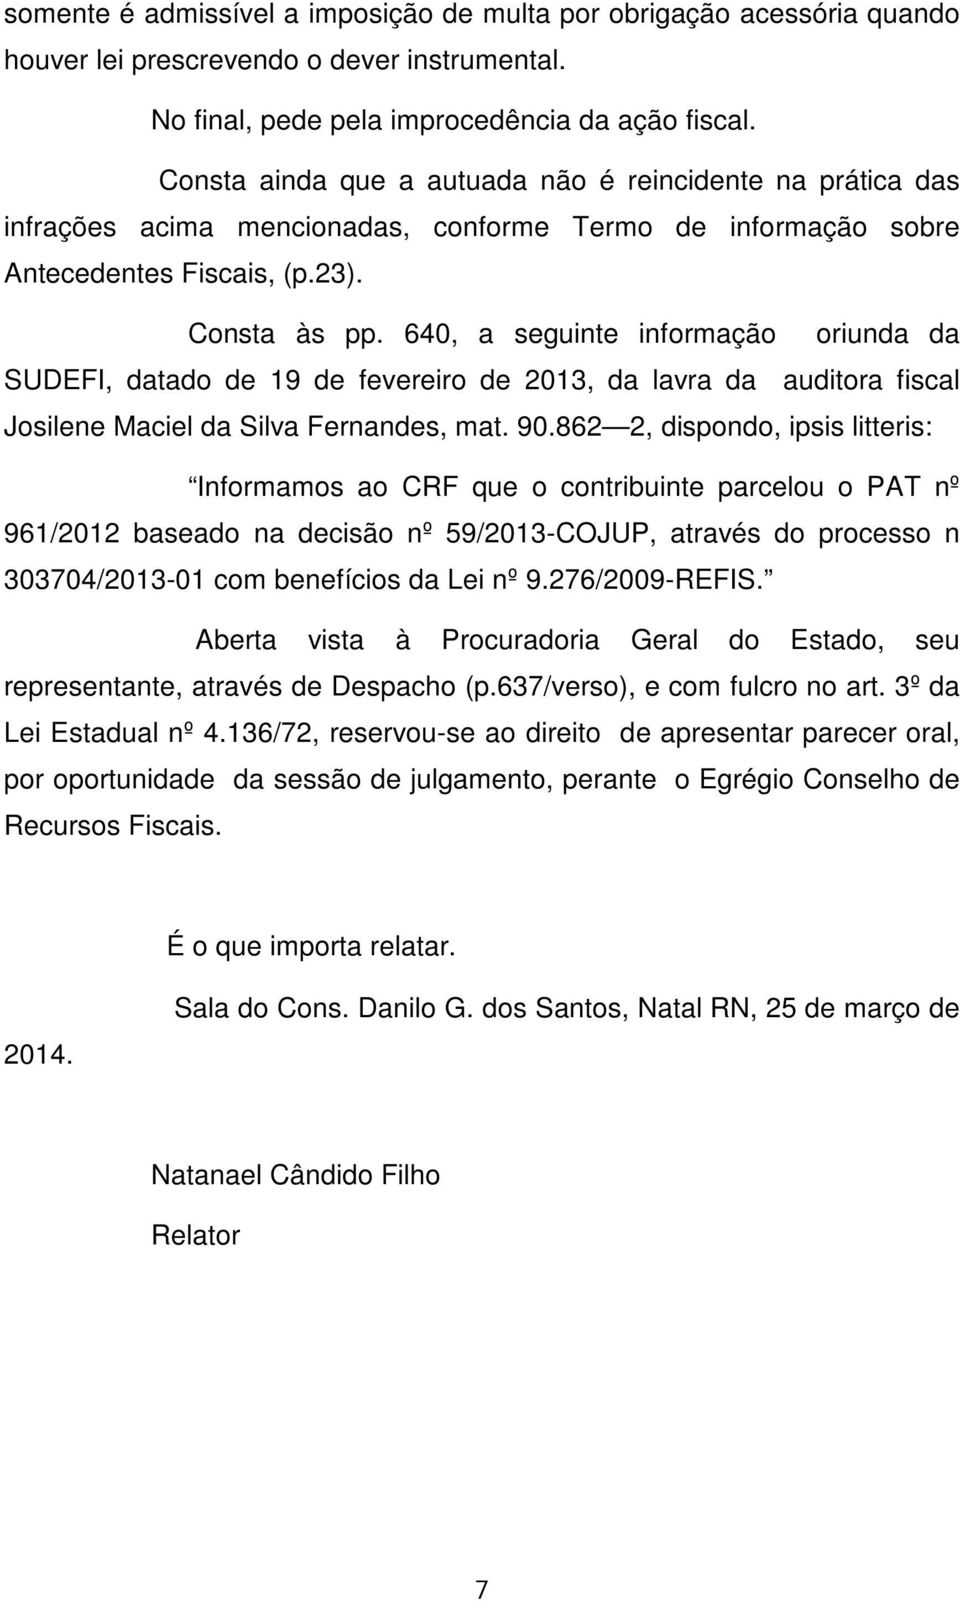 640, a seguinte informação oriunda da SUDEFI, datado de 19 de fevereiro de 2013, da lavra da auditora fiscal Josilene Maciel da Silva Fernandes, mat. 90.